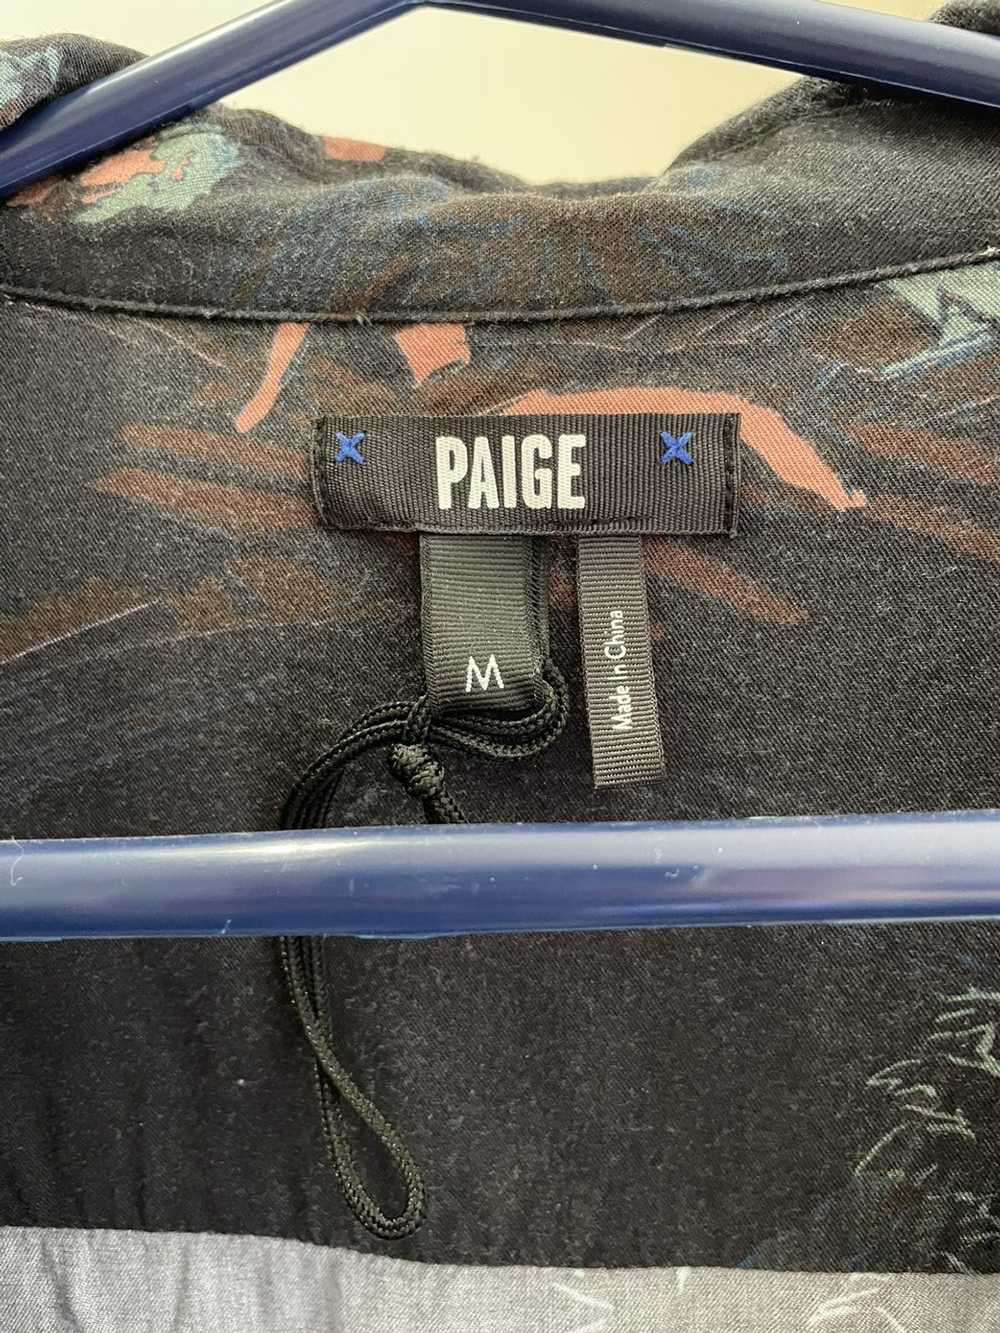 Paige Paige Hawaiian shirt - image 2